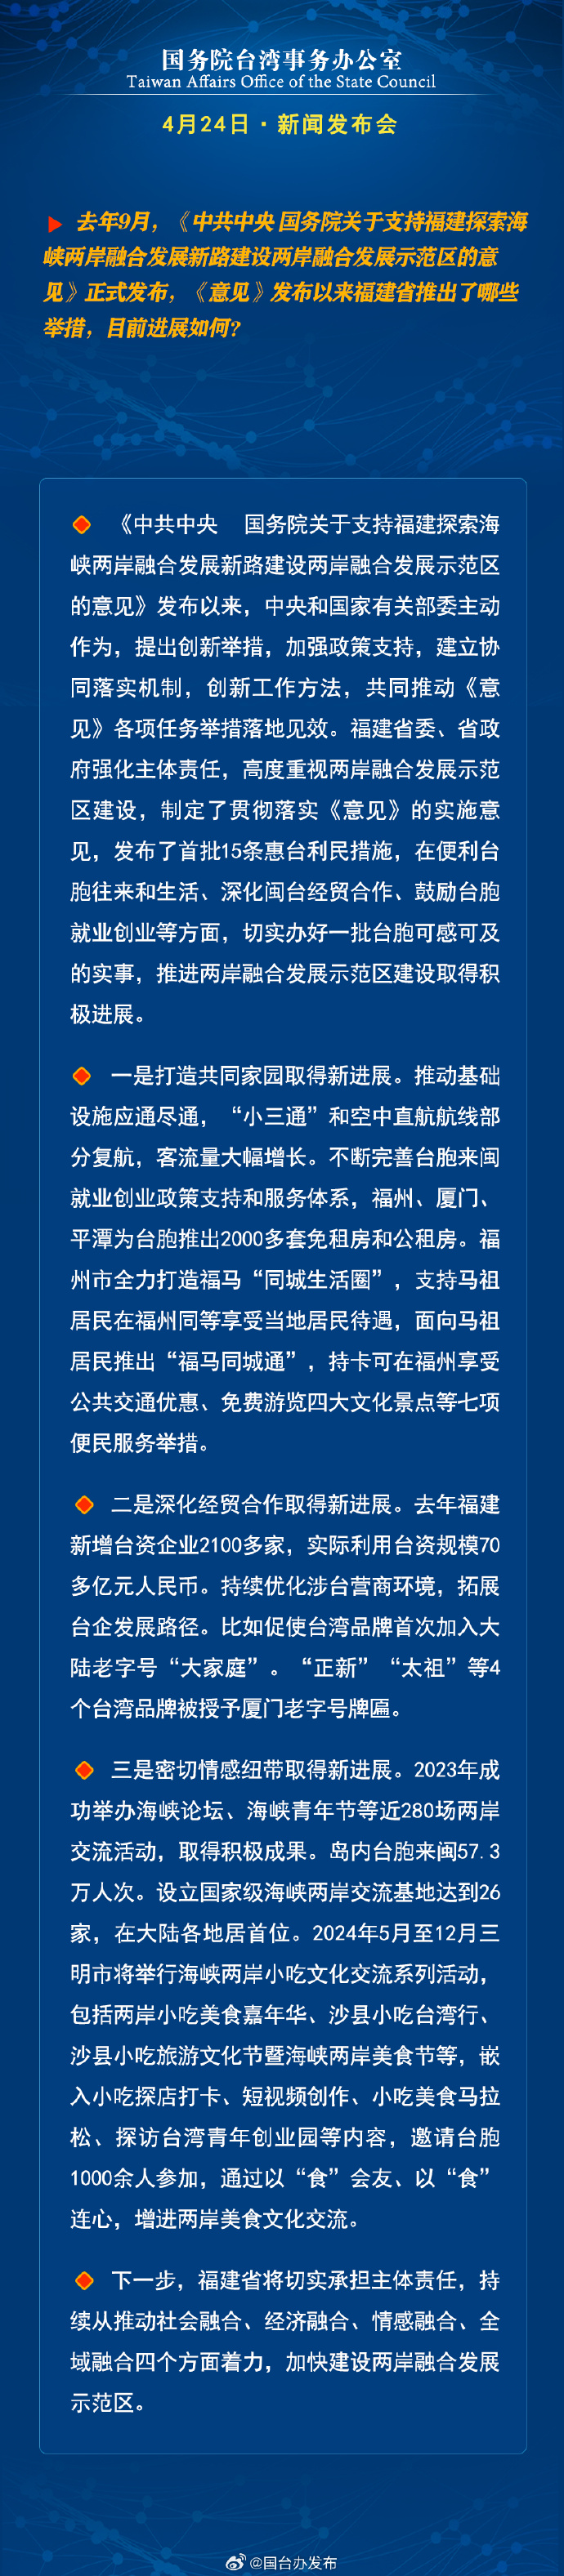 国务院台湾事务办公室4月24日·新闻发布会